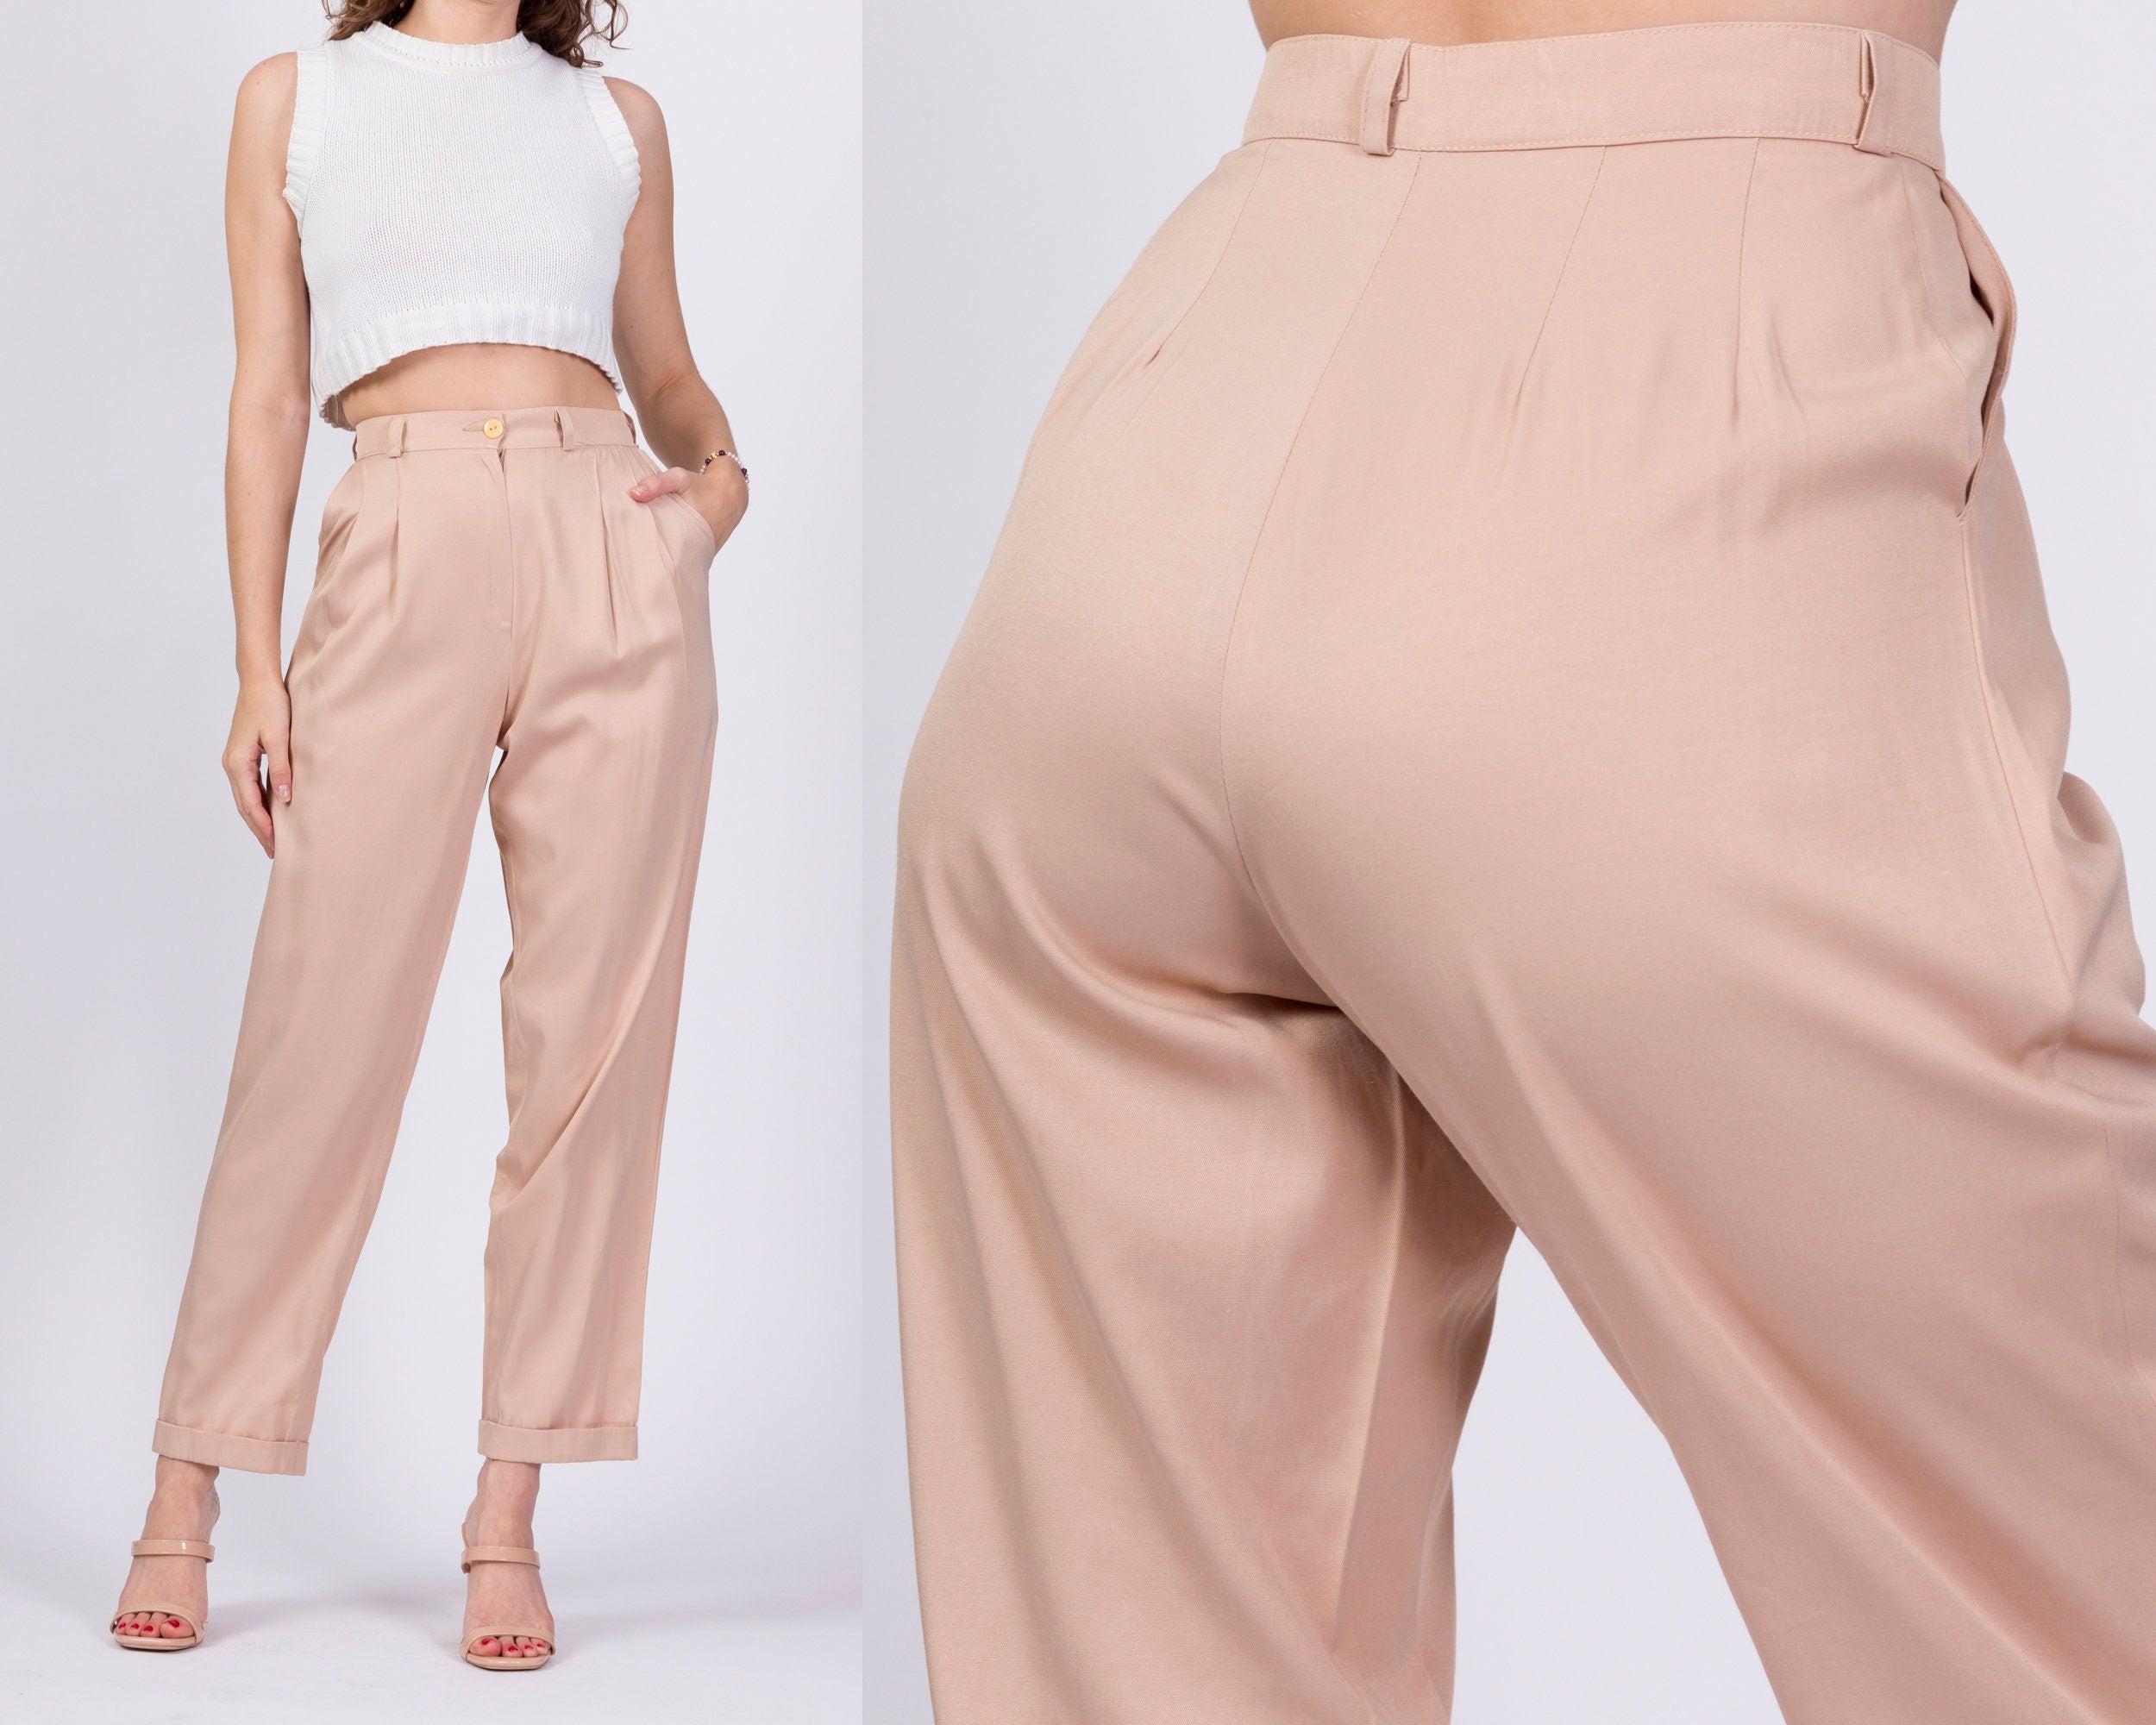 Fashion Office Wear Pants For Women Vintage High Waist Zipper Fly Ankle  Trousers  eBay